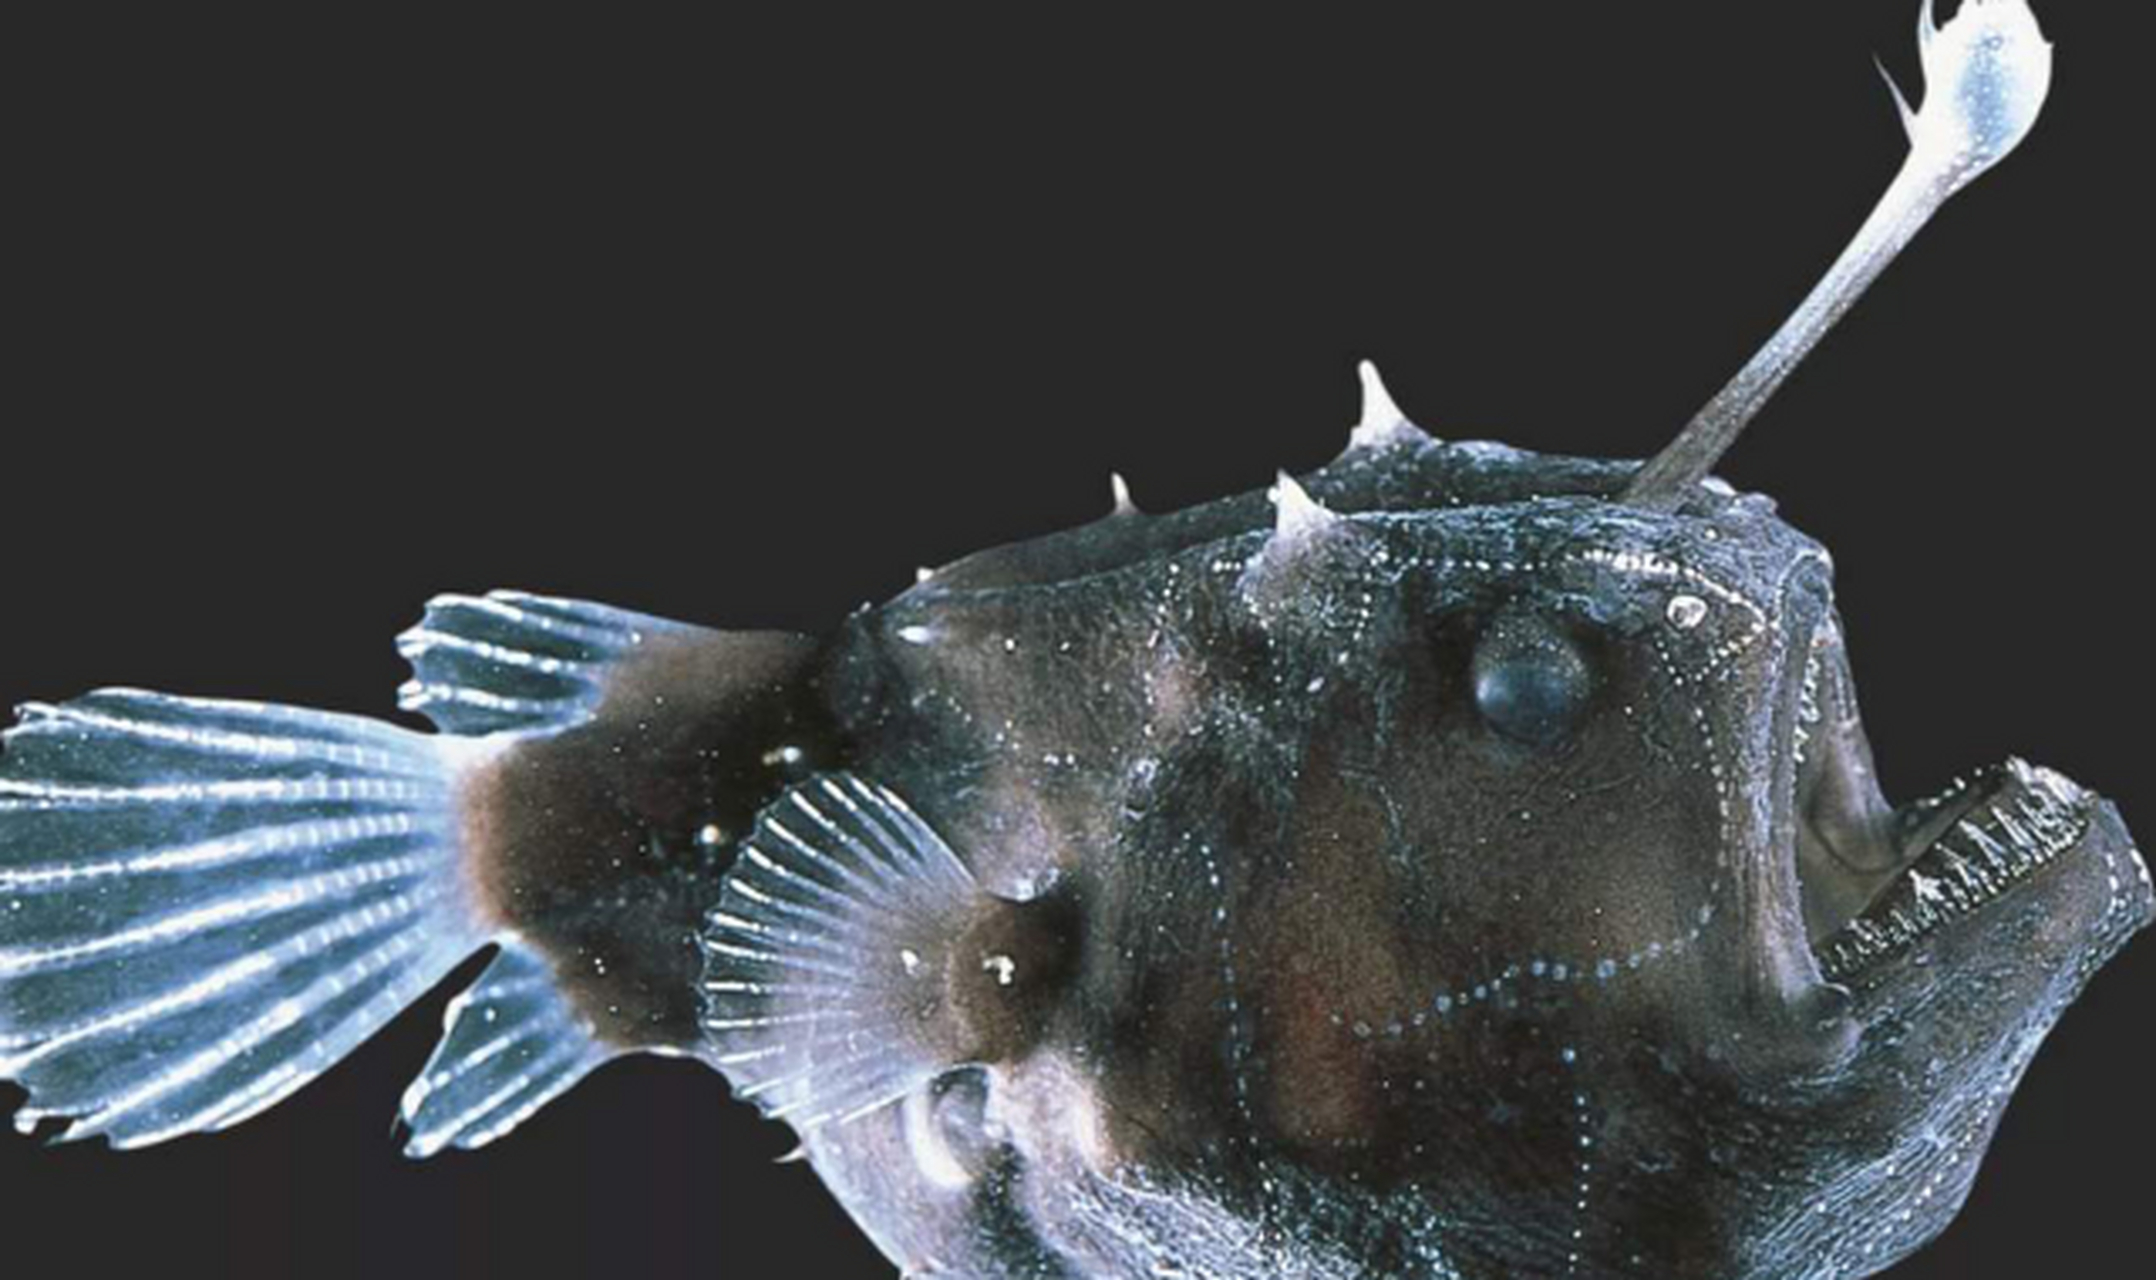 世界上最丑的动物,丑哭了 鮟鱇鱼 鮟鱇鱼又被称为